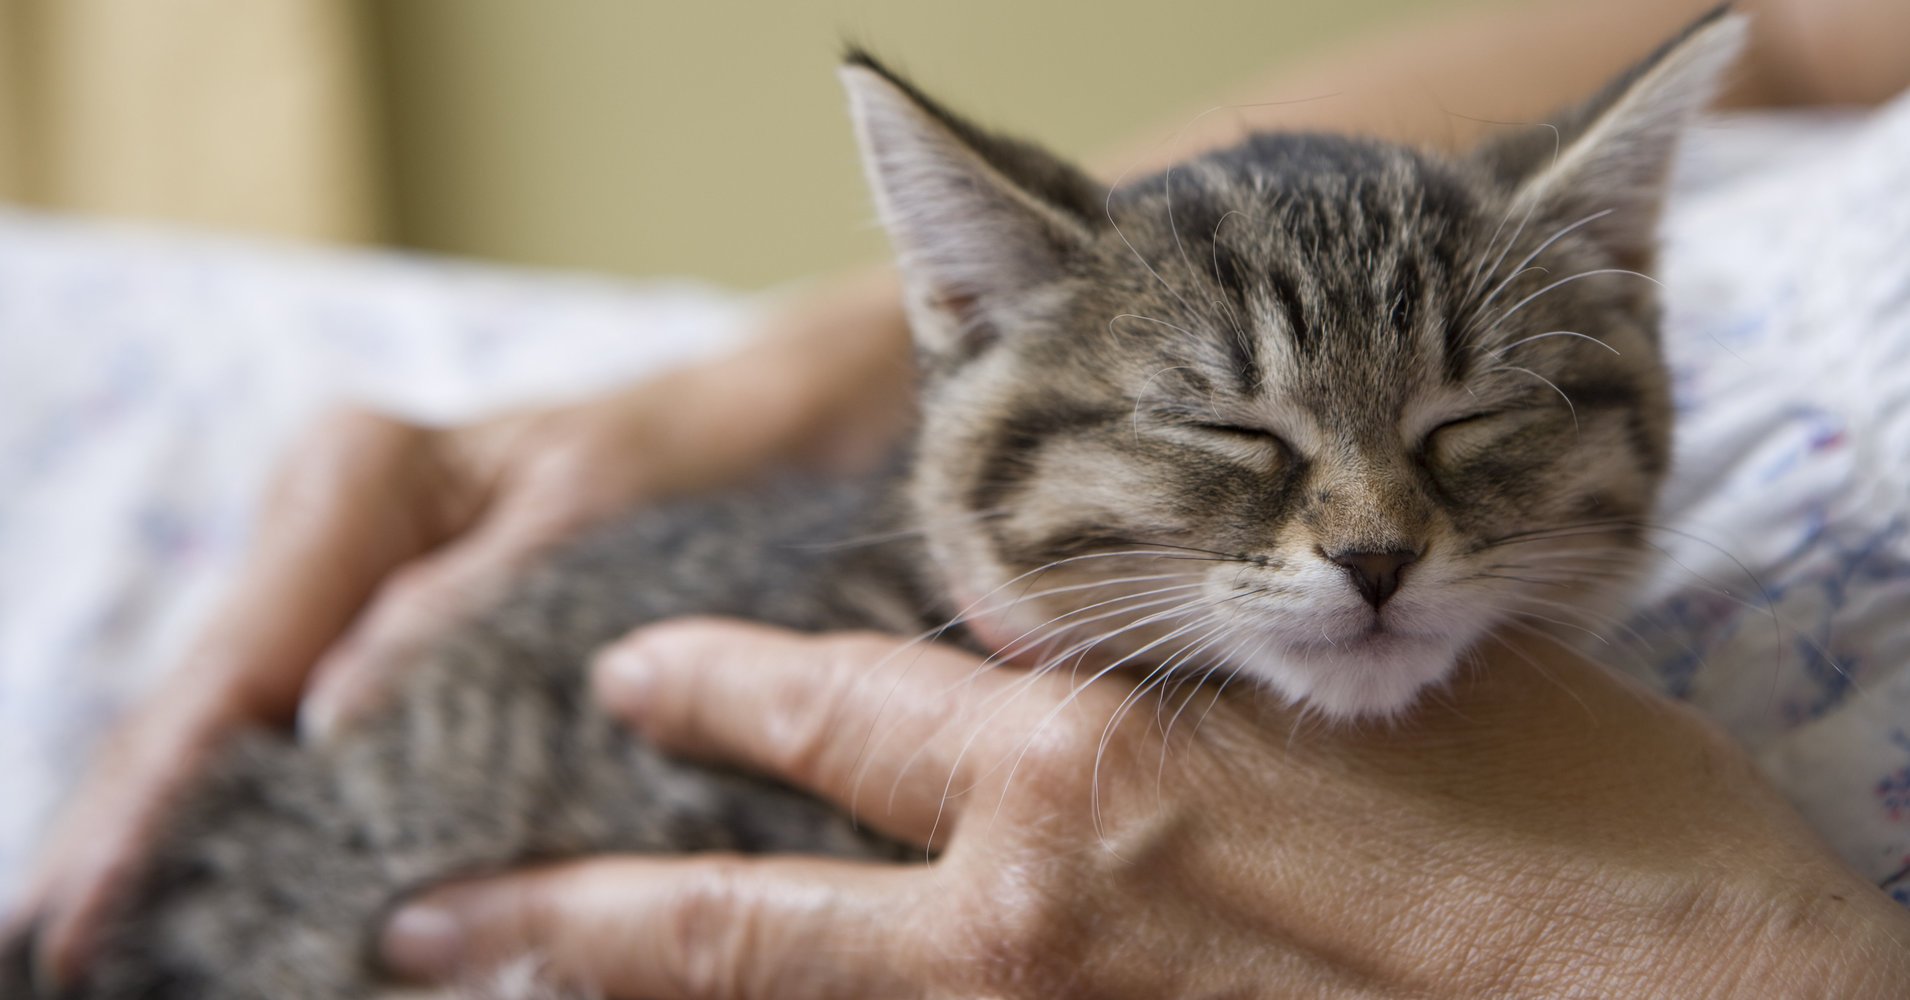 a.jpeg?resize=1200,630 - Une clinique vétérinaire irlandaise a mis une offre d'emploi pour la profession de 'câlineur de chat'